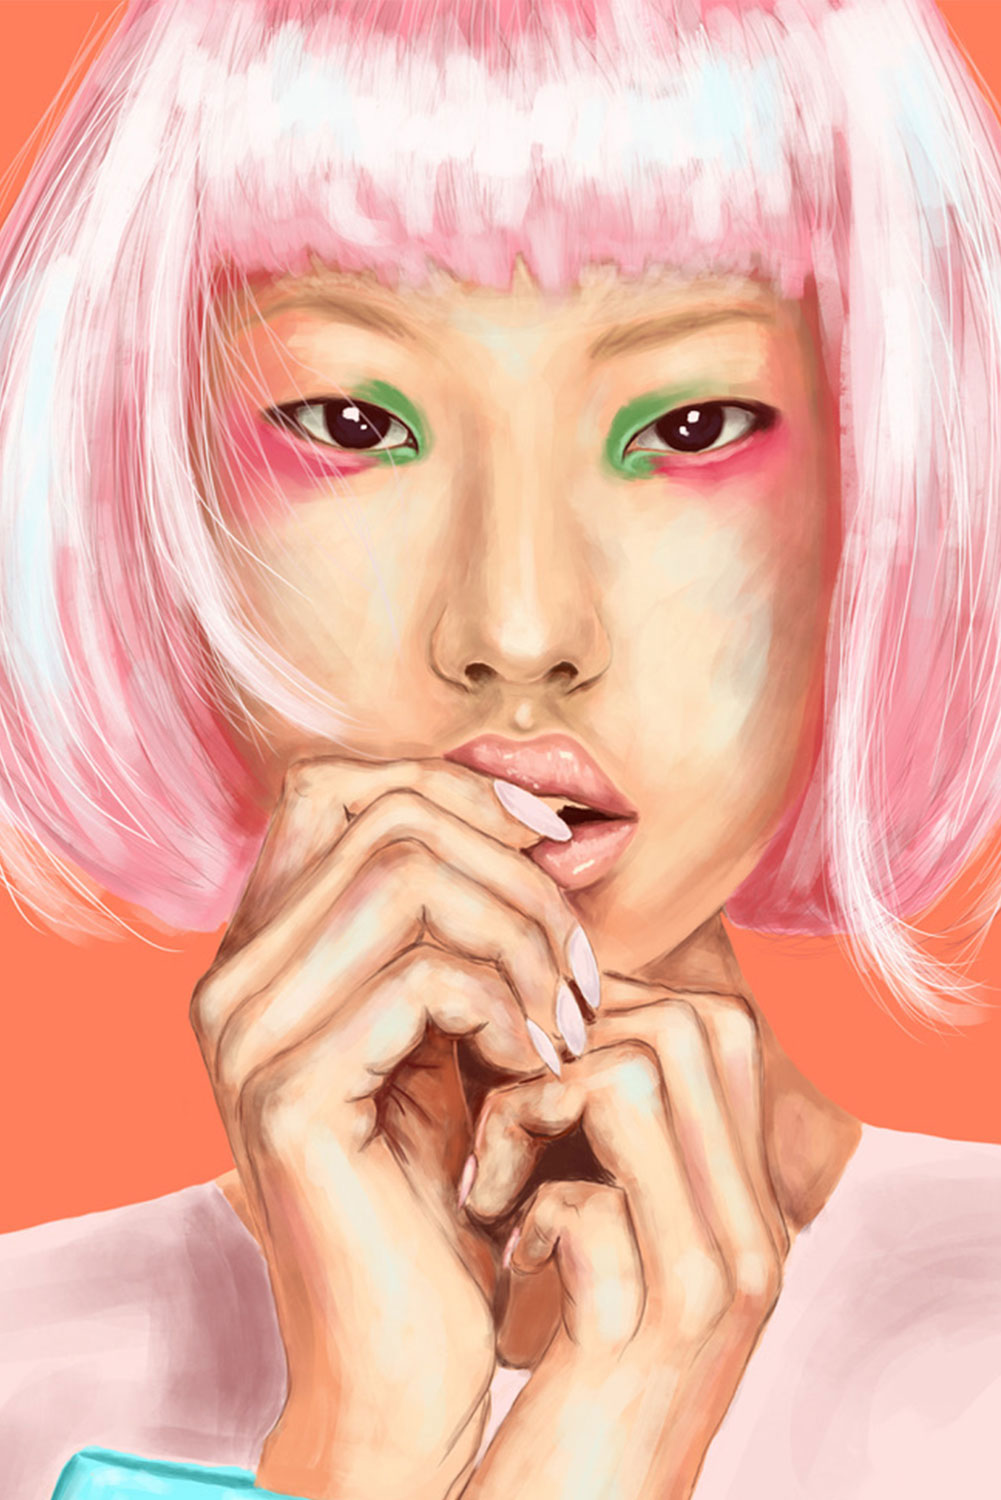 Dessin en illustration d'une femme asiatique avec des cheveux roses